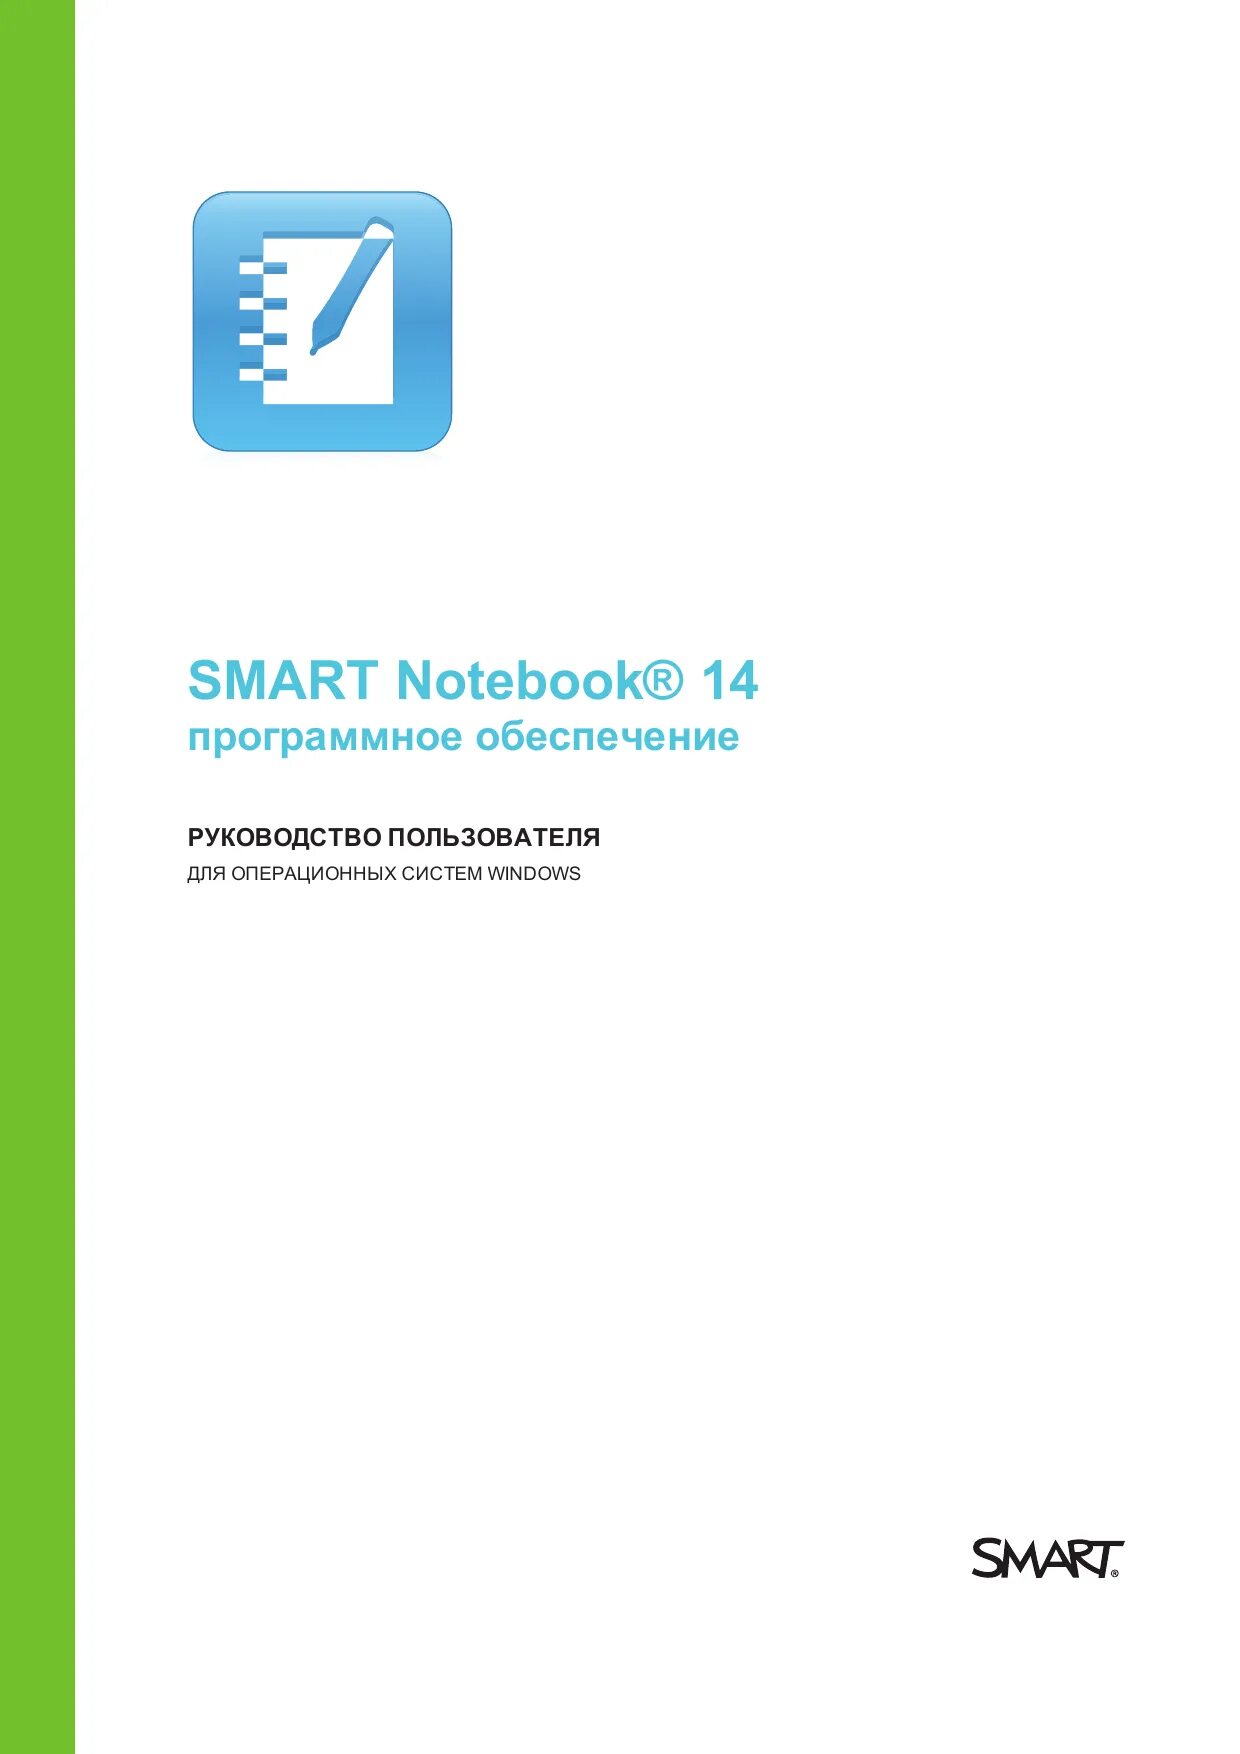 Смарт тетрадь личный кабинет. Программное обеспечение Smart Notebook. Смарт нотебук. Smart Notebook Базовая версия. BL Art Notebook.